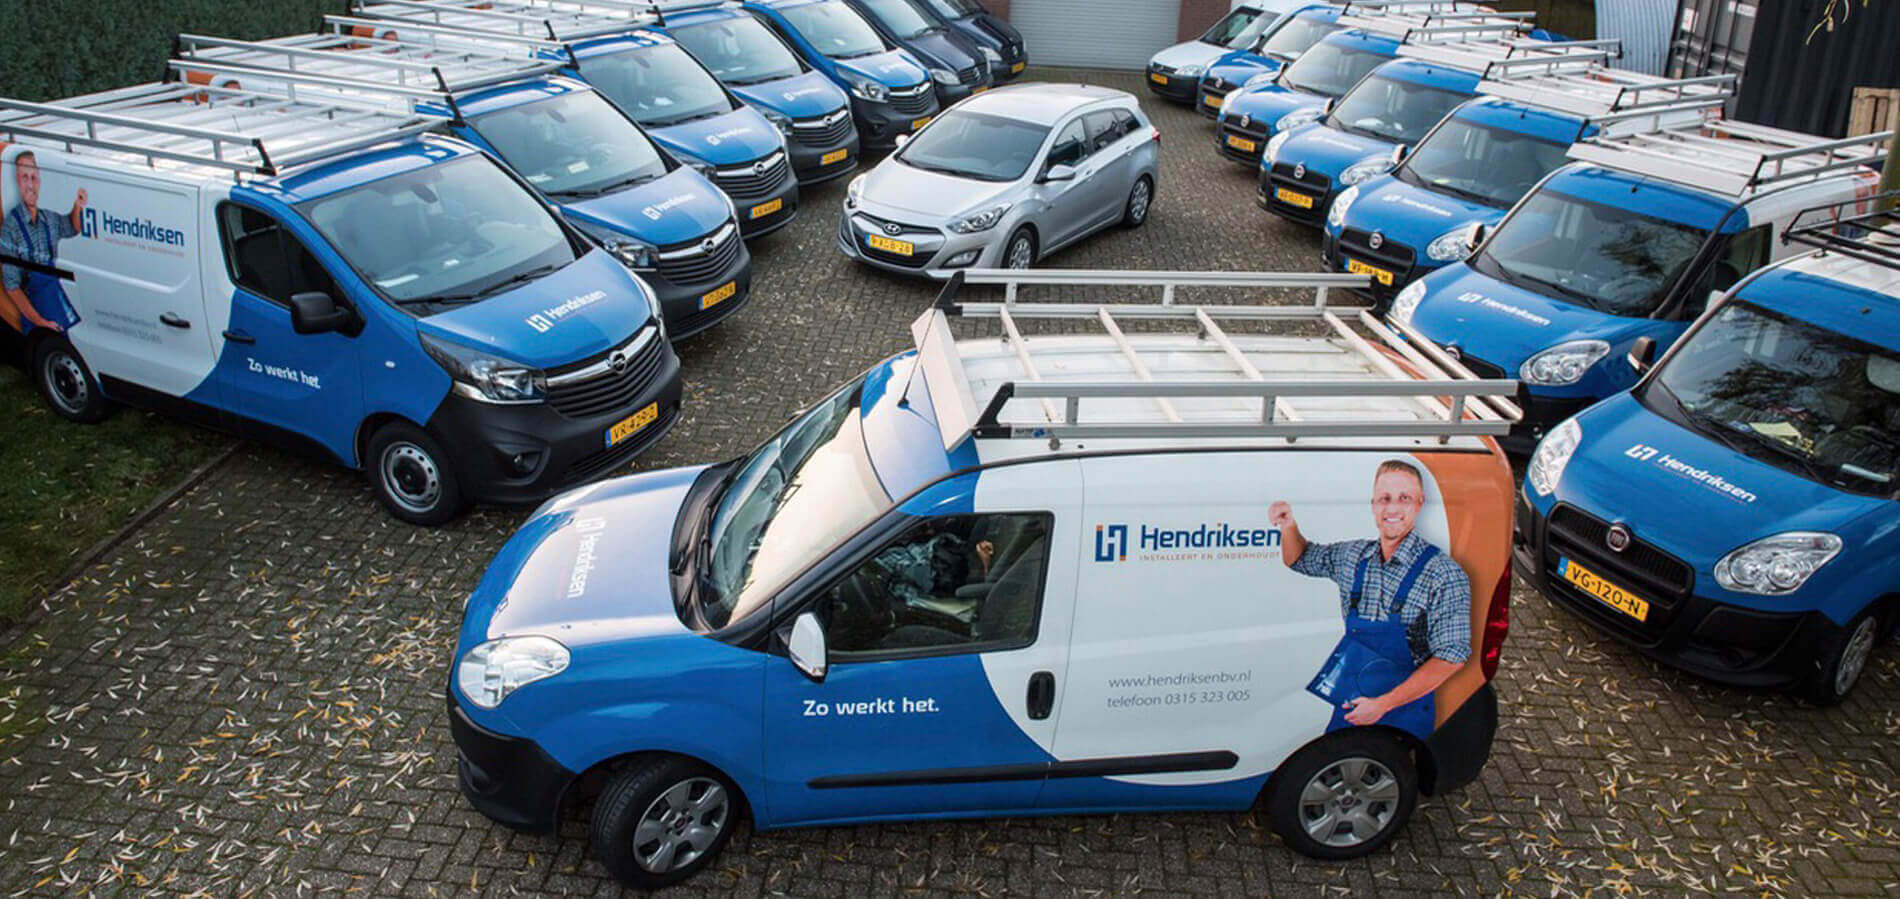 (c) Hendriksenbv.nl